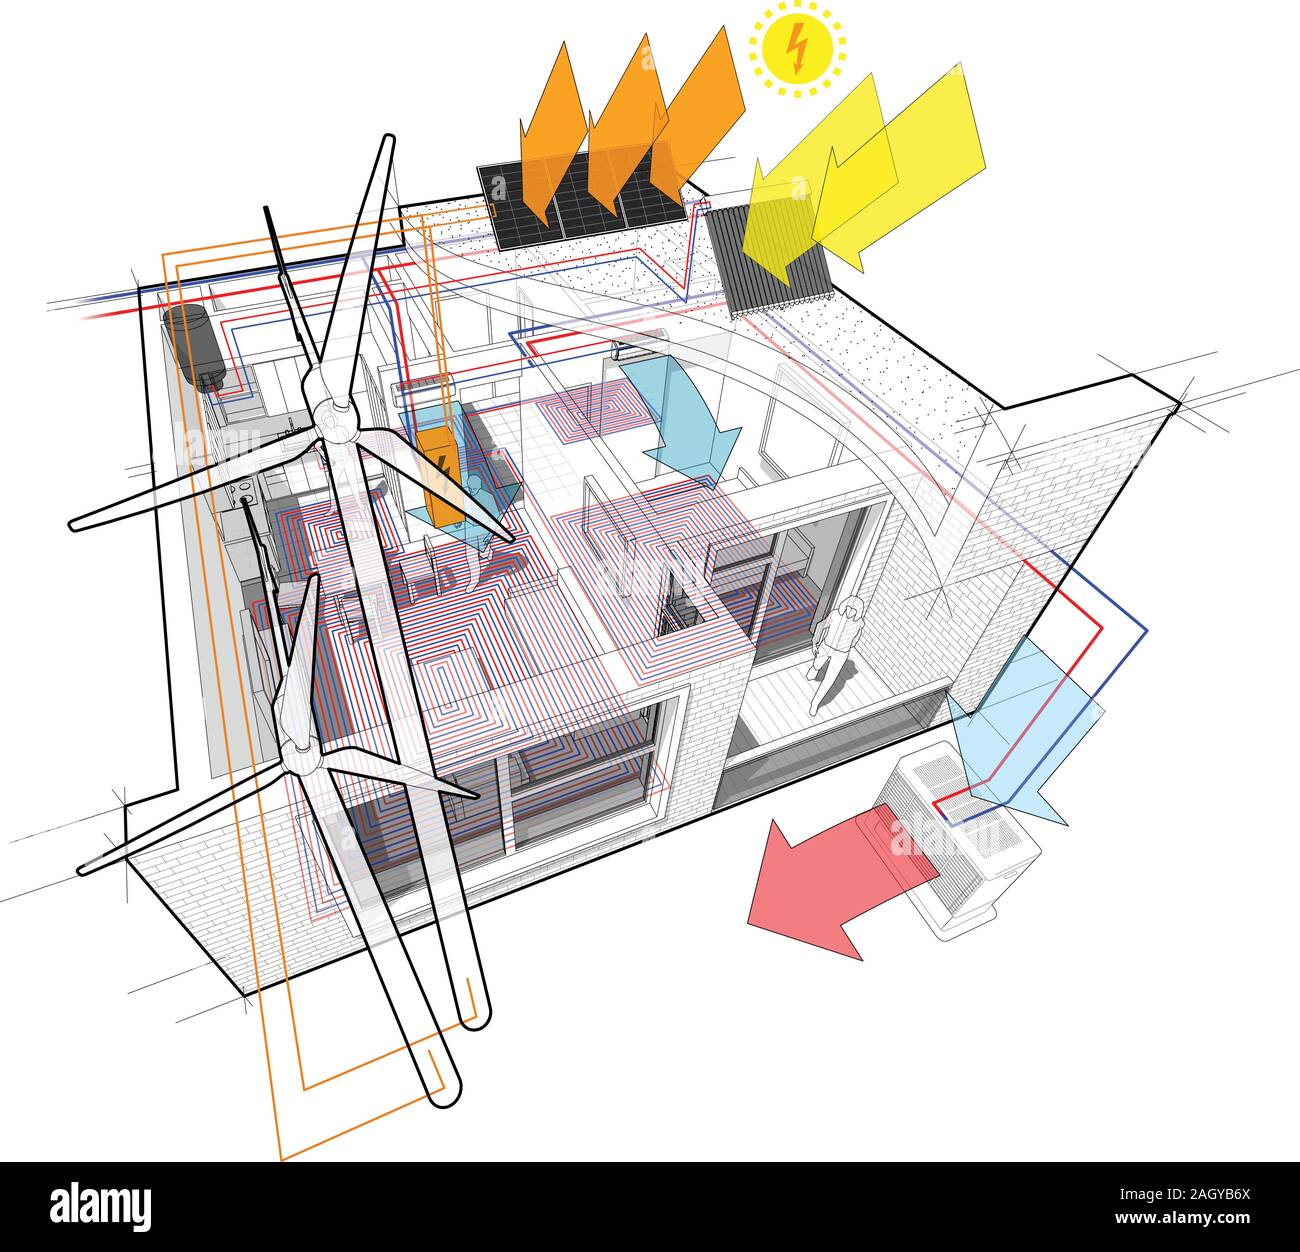 Schema di appartamenti con riscaldamento a pavimento e collegato alle turbine eoliche e fotovoltaiche e pannelli solari e aria condizionata Illustrazione Vettoriale